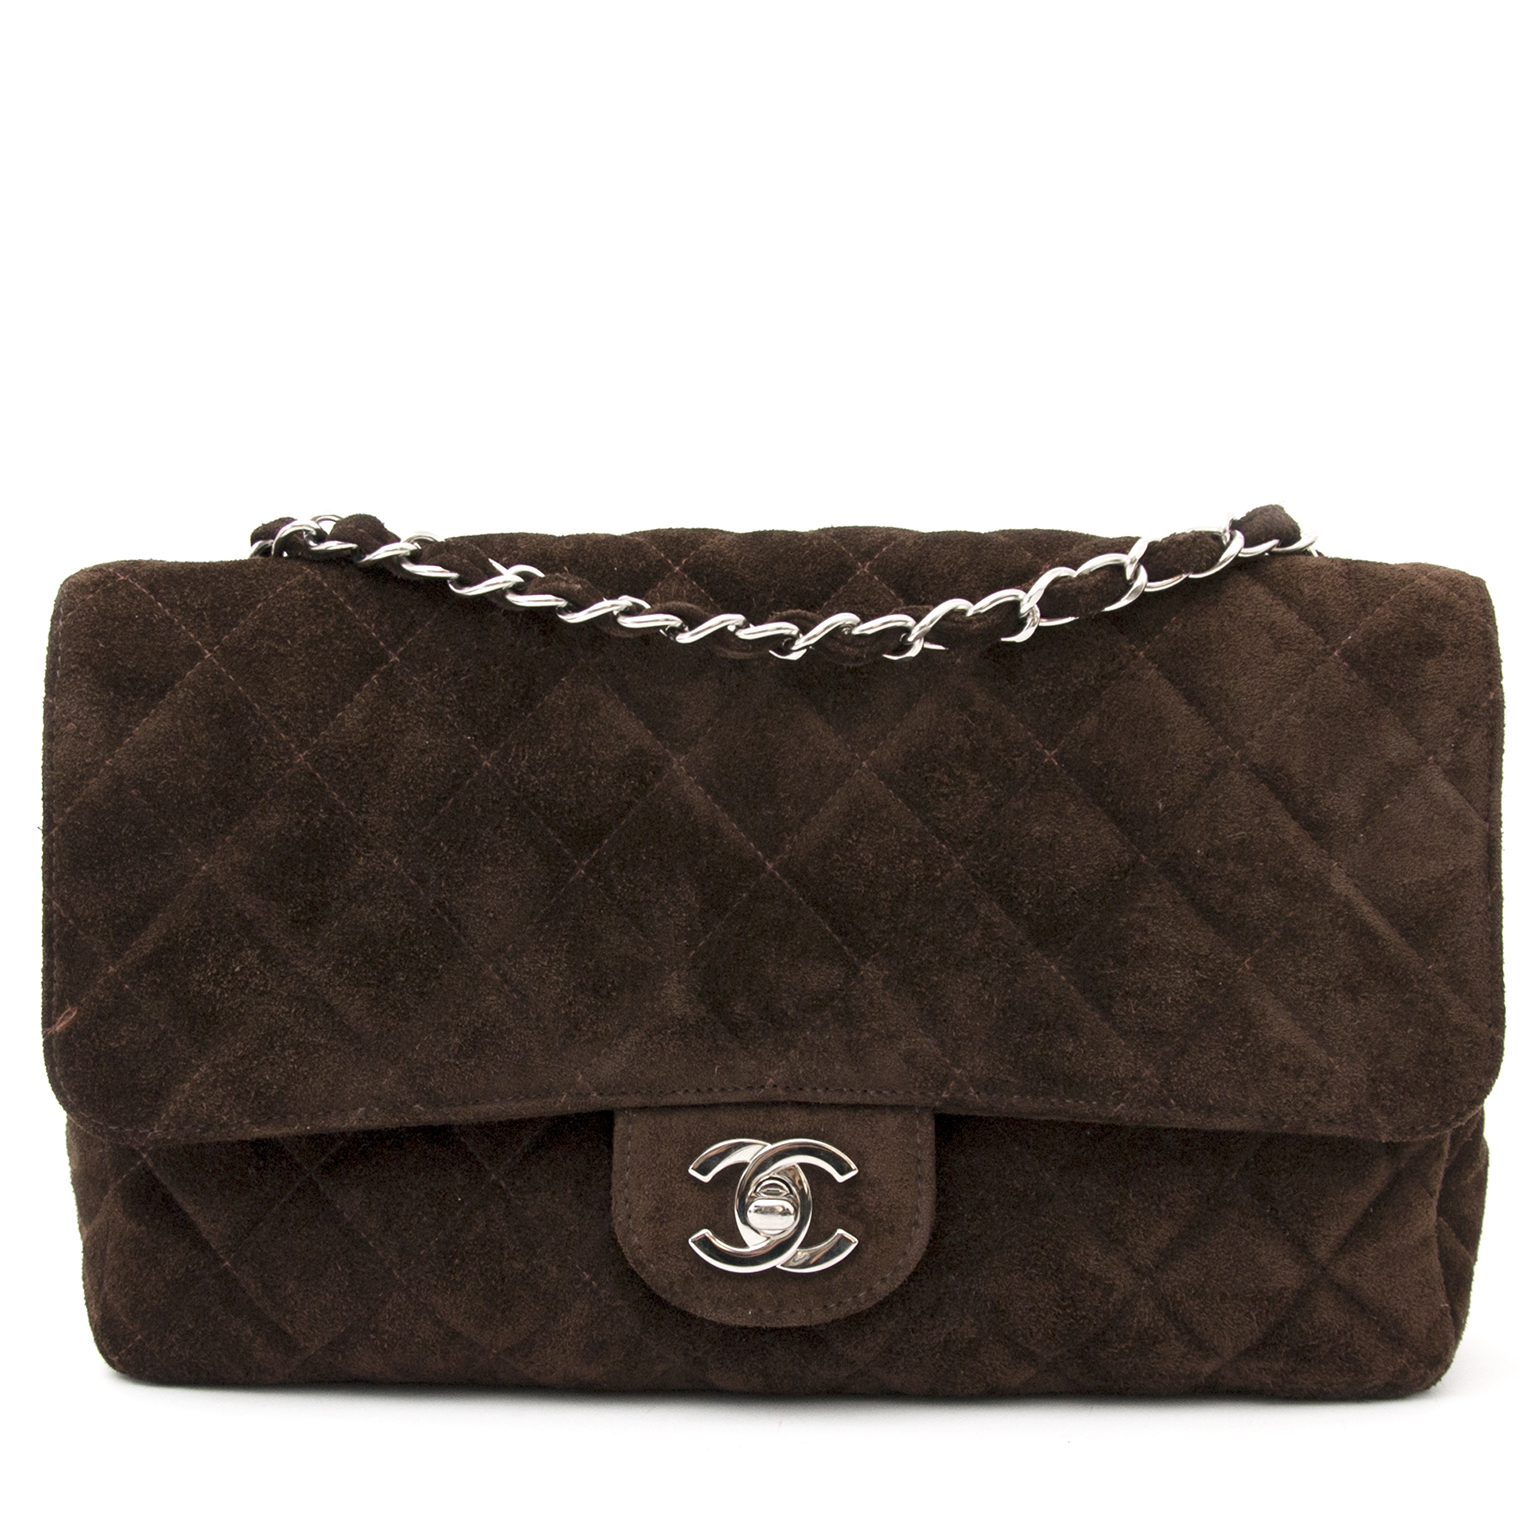 Handbag Chanel Brown in Suede - 28519644